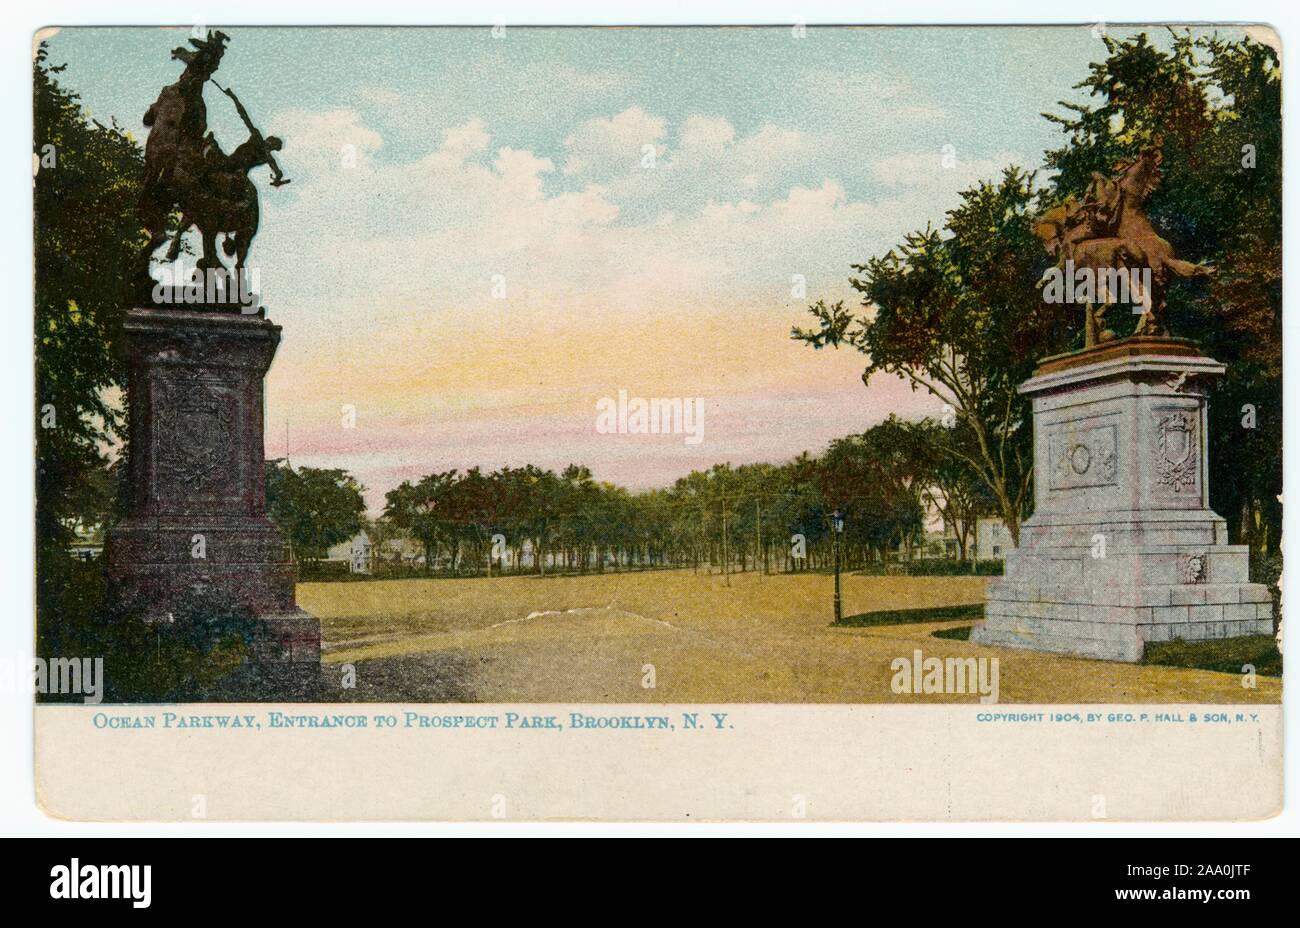 Carte postale illustrée de la promenade de l'océan entrée de Prospect Park, Brooklyn, New York City, créé et publié par Geo, 1904. P. Hall et son fils. À partir de la Bibliothèque publique de New York. () Banque D'Images